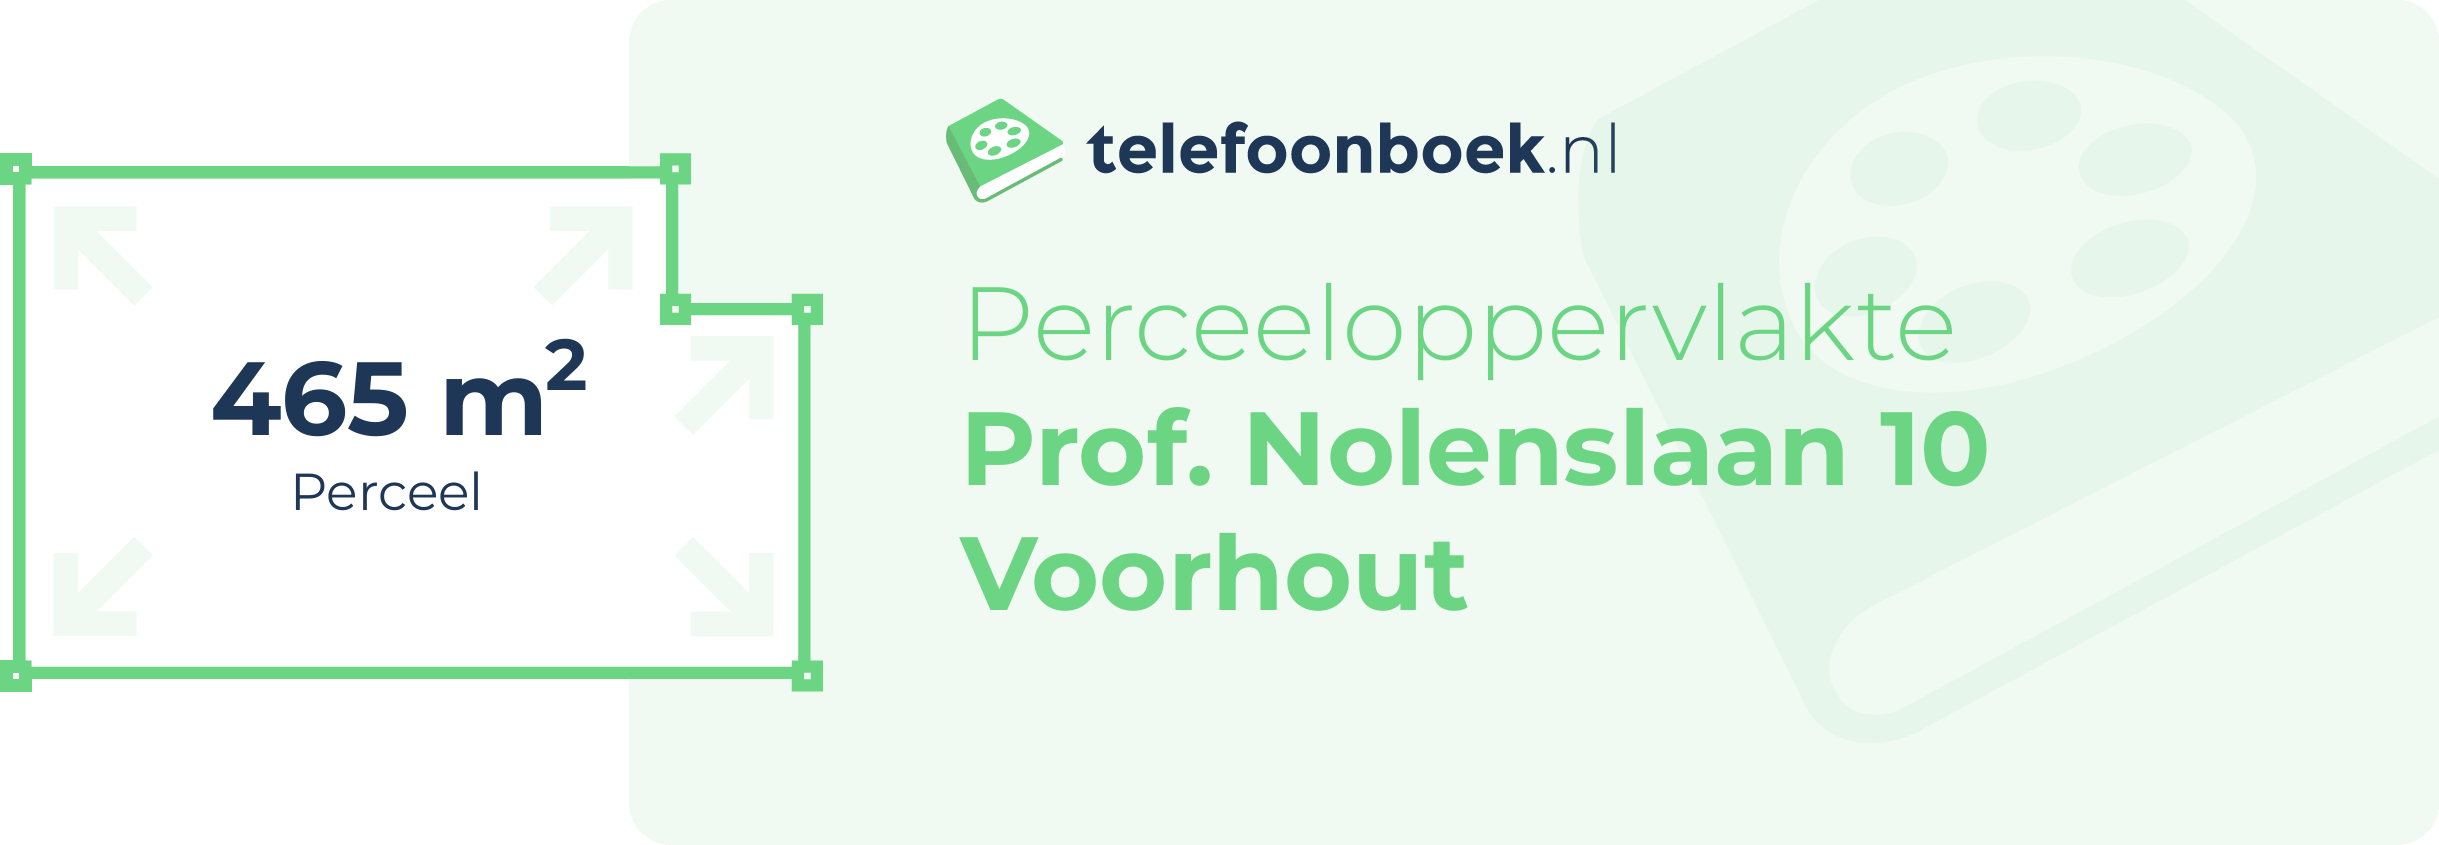 Perceeloppervlakte Prof. Nolenslaan 10 Voorhout